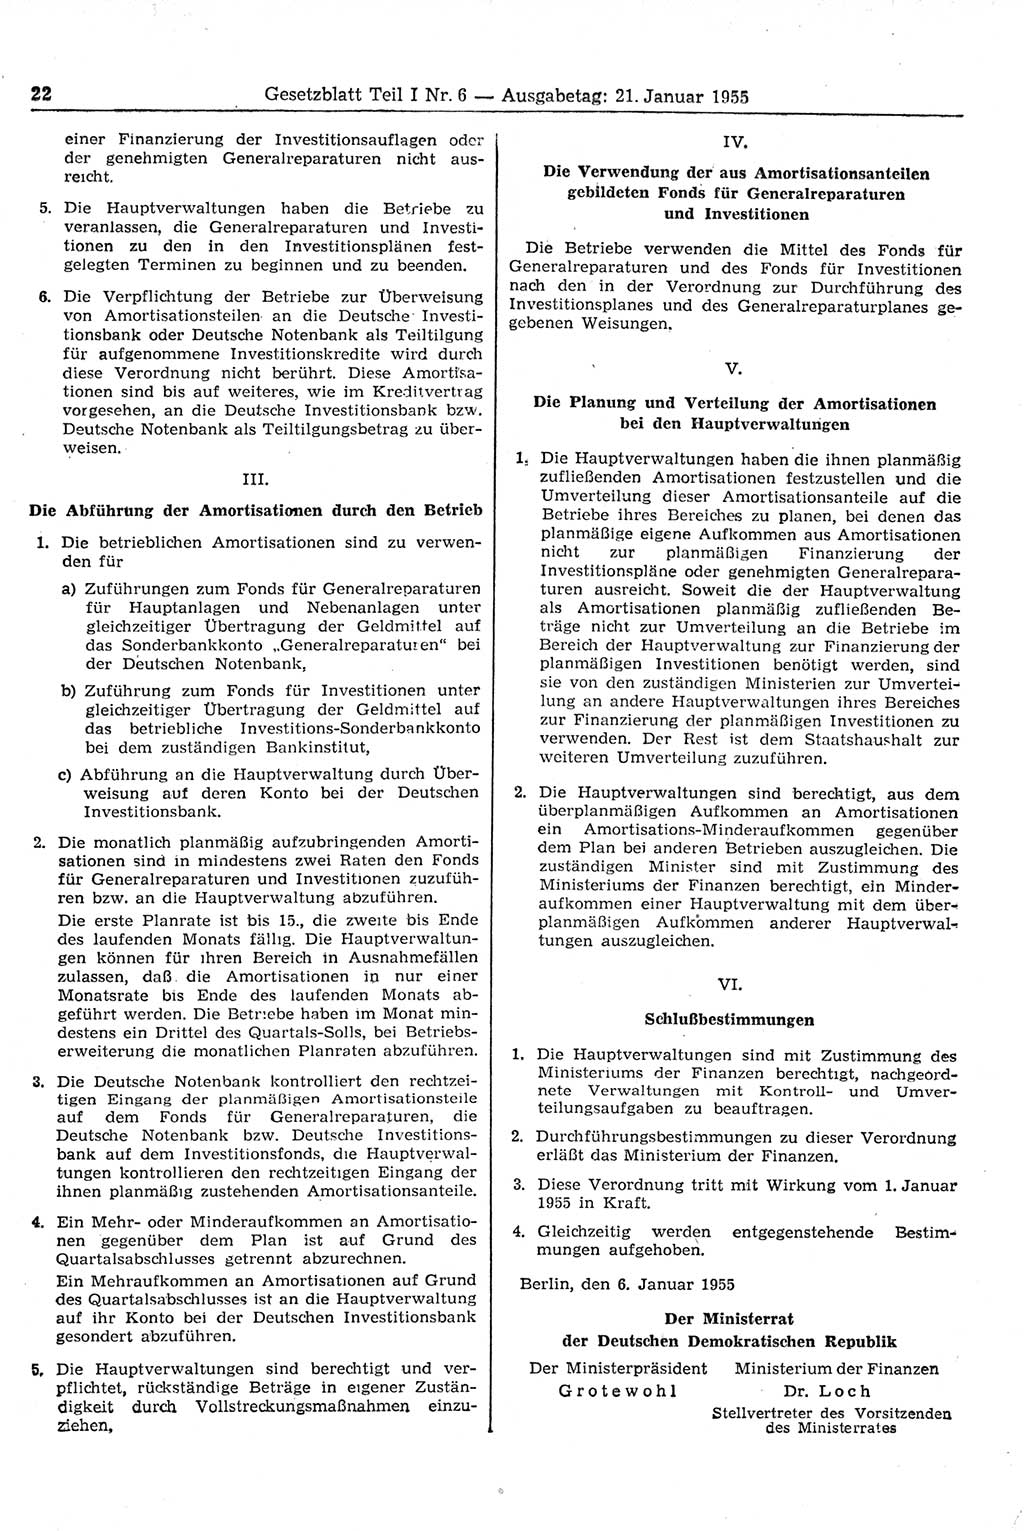 Gesetzblatt (GBl.) der Deutschen Demokratischen Republik (DDR) Teil Ⅰ 1955, Seite 22 (GBl. DDR Ⅰ 1955, S. 22)